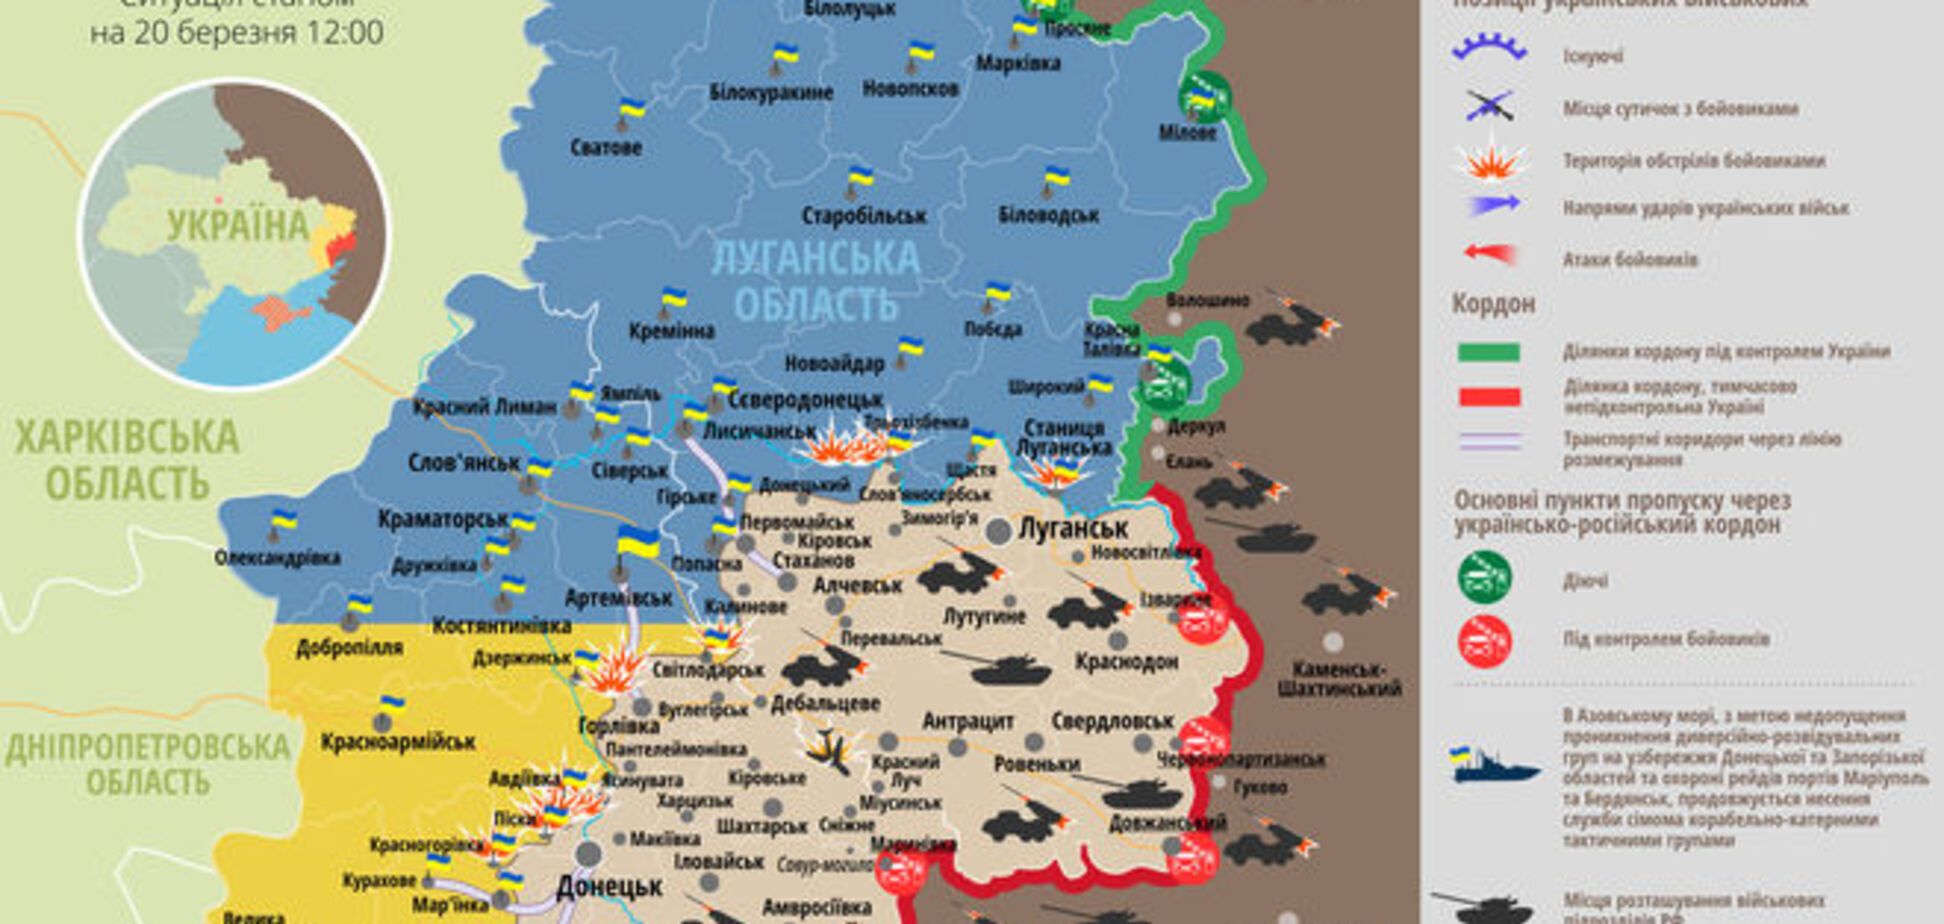 Ситуація на Донбасі загострилася по всій лінії фронту: мапа АТО